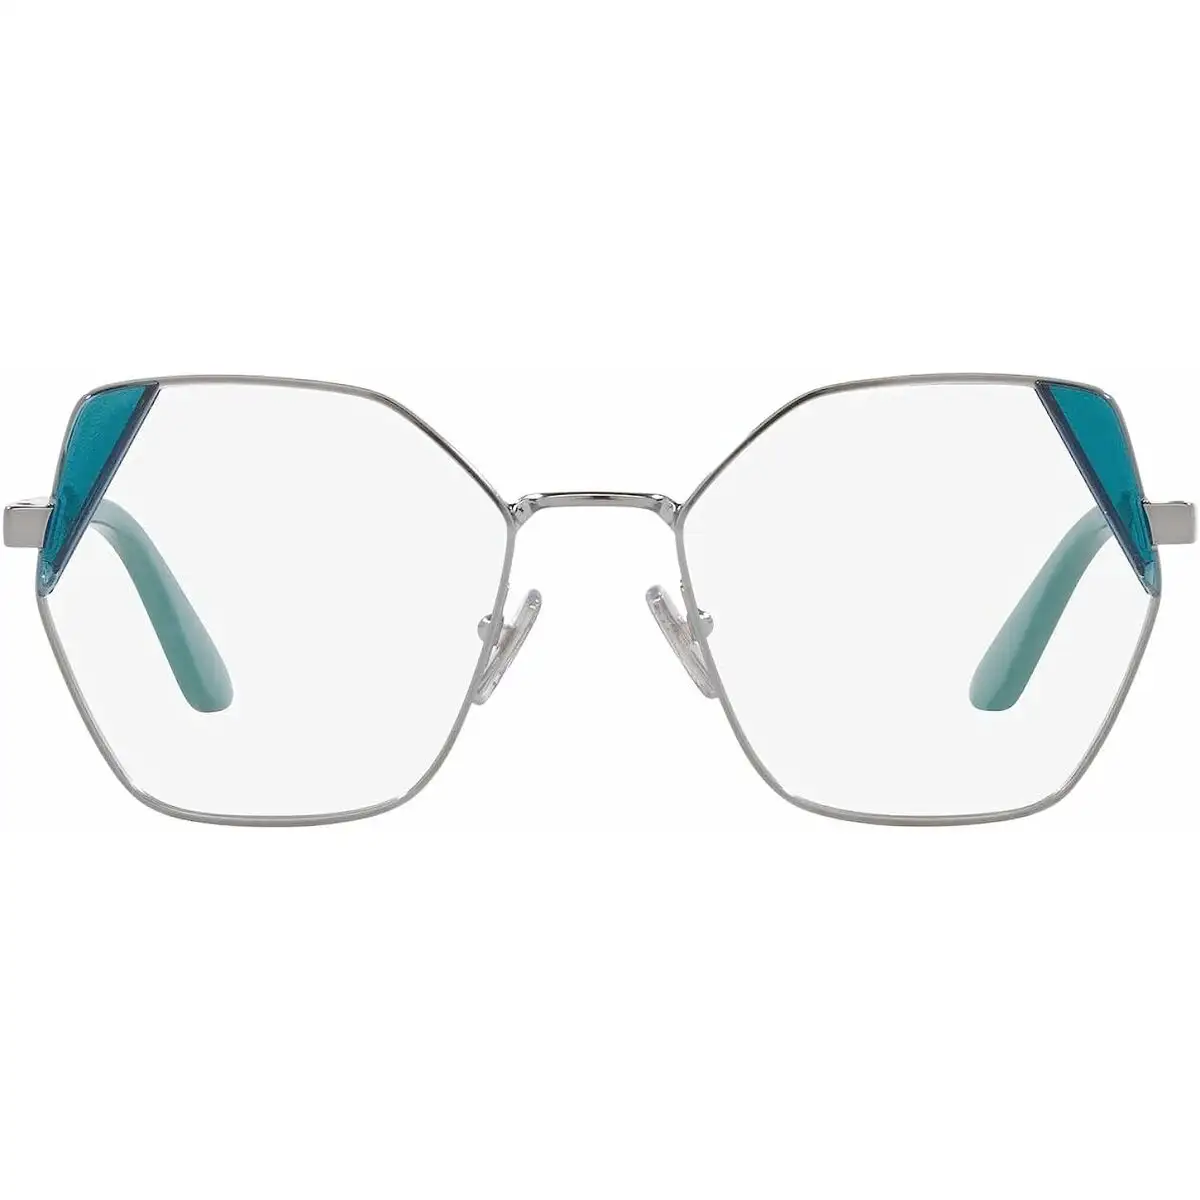 Monture de lunettes femme vogue vo 4270_6590. DIAYTAR SENEGAL - Votre Plateforme Shopping de Confiance. Naviguez à travers nos rayons et choisissez des produits fiables qui répondent à vos besoins quotidiens.